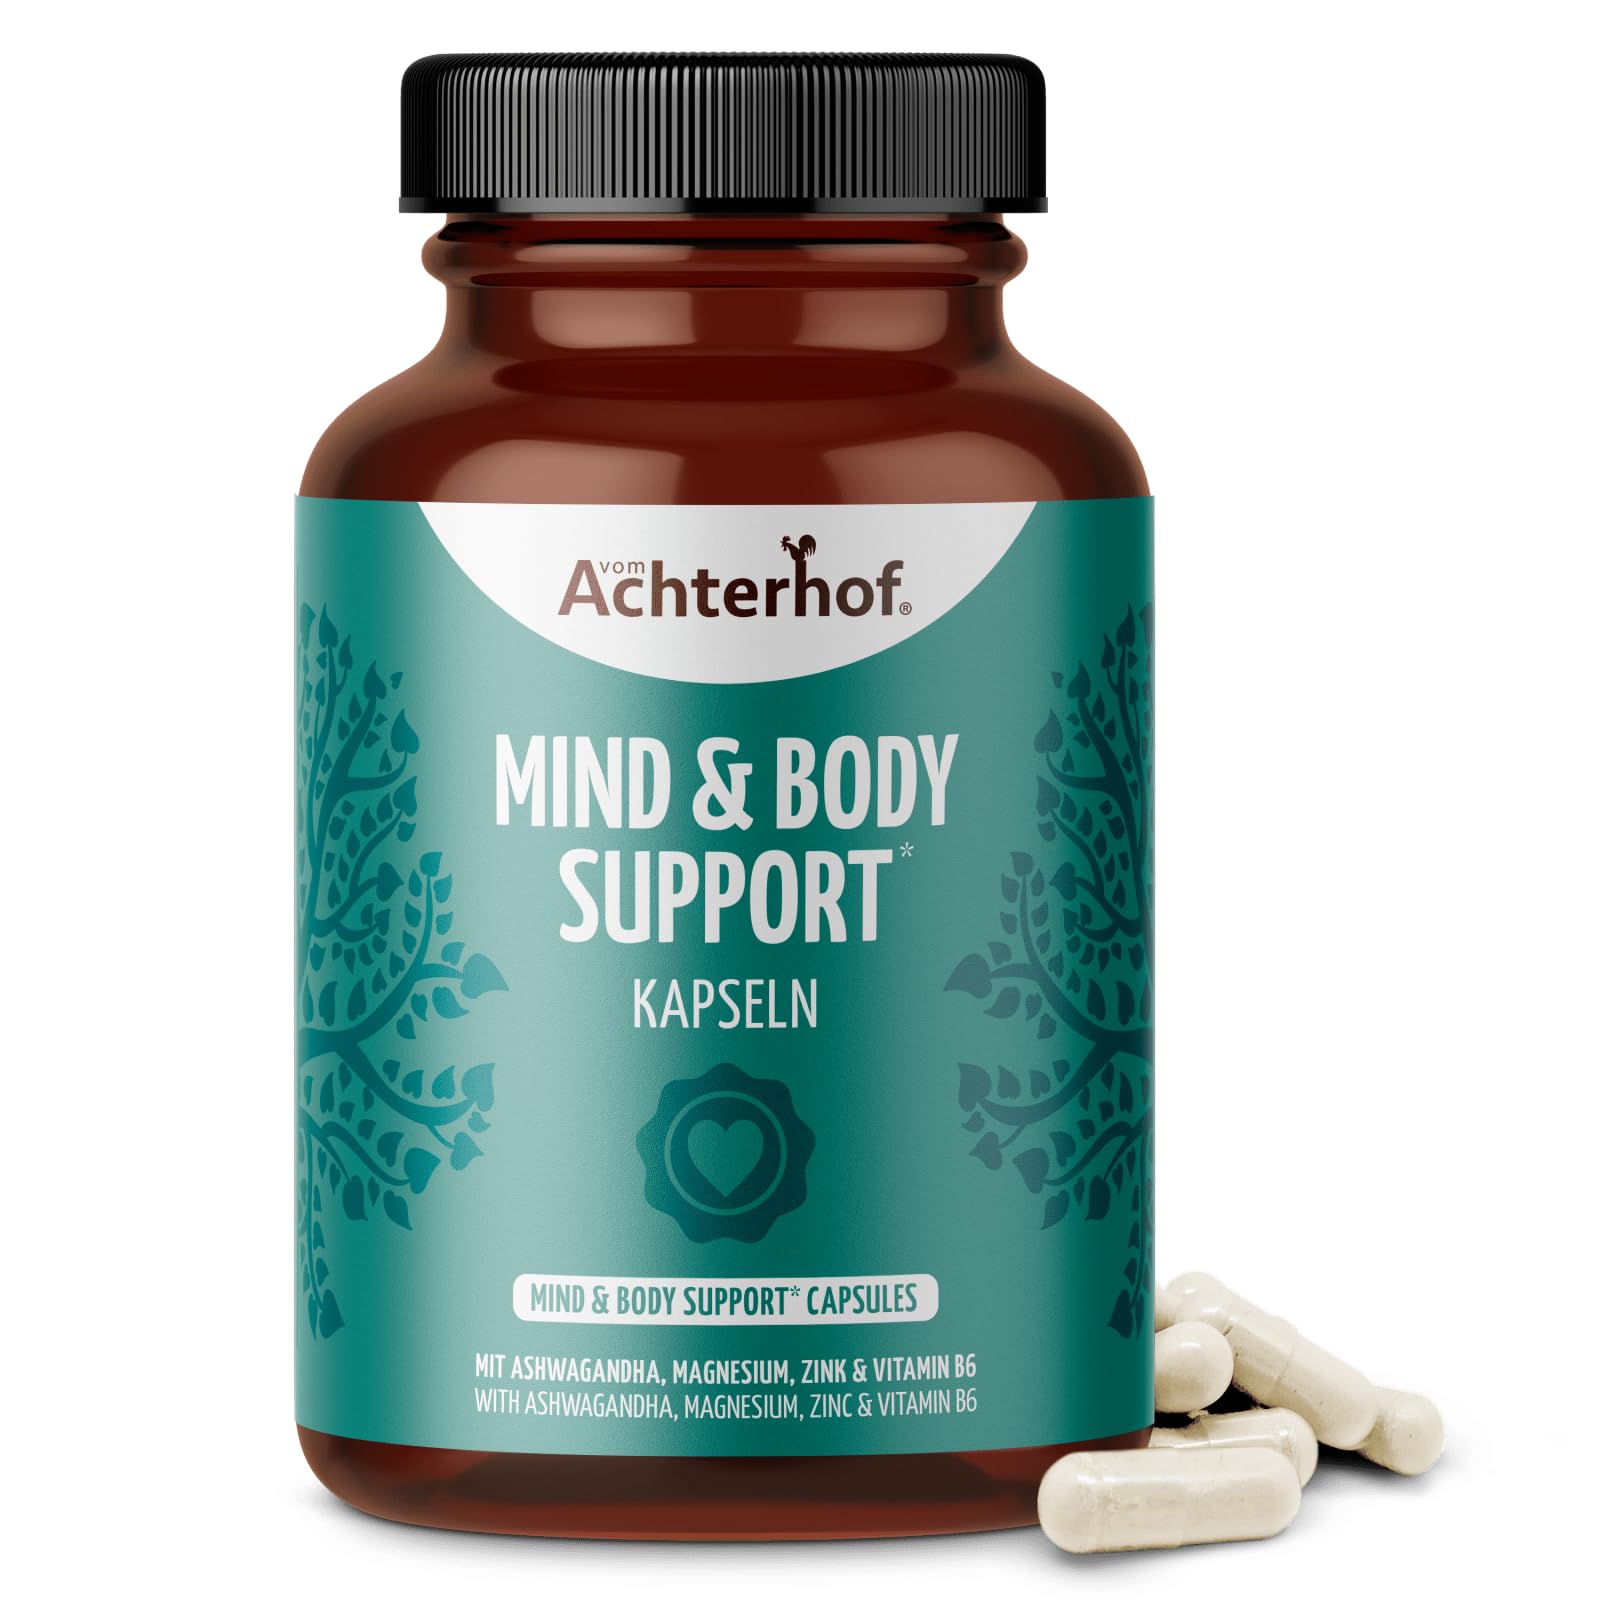 Mind & Body Support 120 Kapseln | enthält Magnesium, Zink und Vitamin B6 | zusätzlich angereichert mit einem hochwertigen Ashwagandhawurzel-Extrakt |100% vegan | vom Achterhof